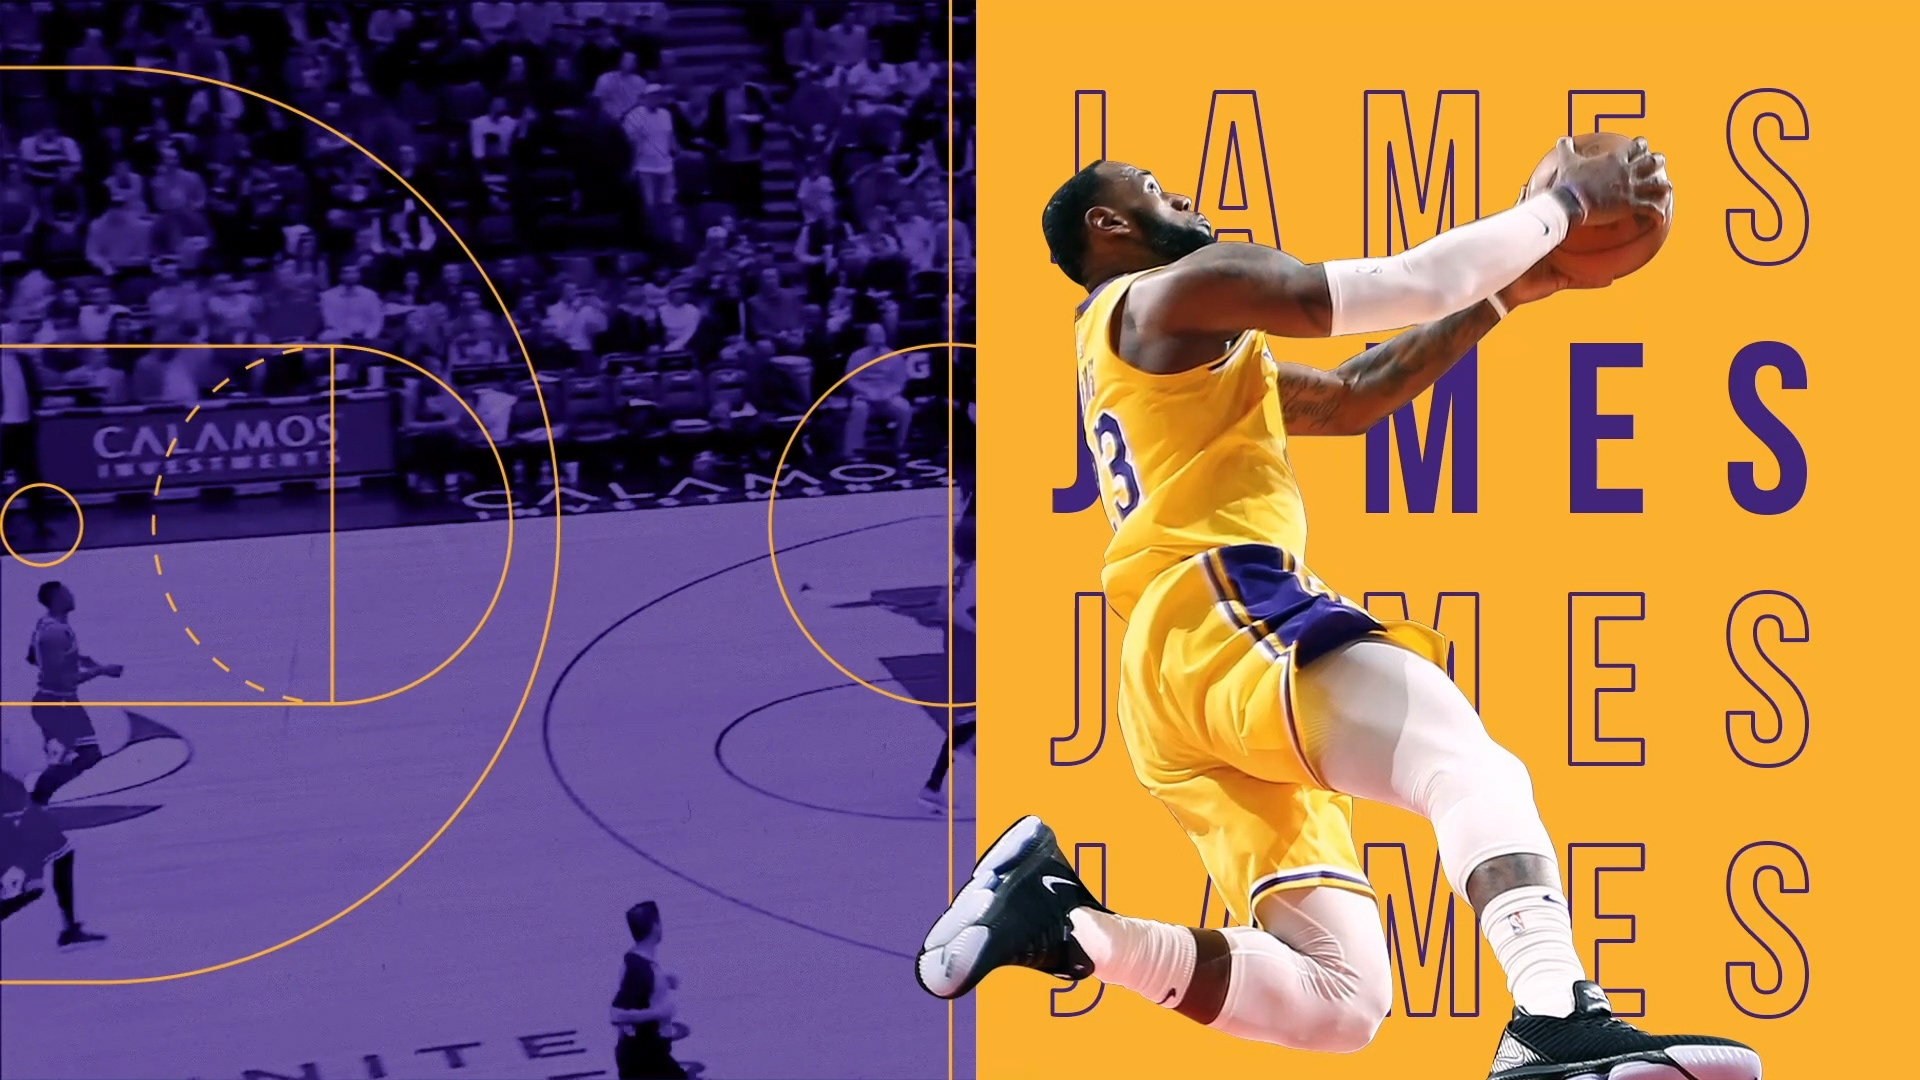 Lebron James - Lakers - 3D Motion Design